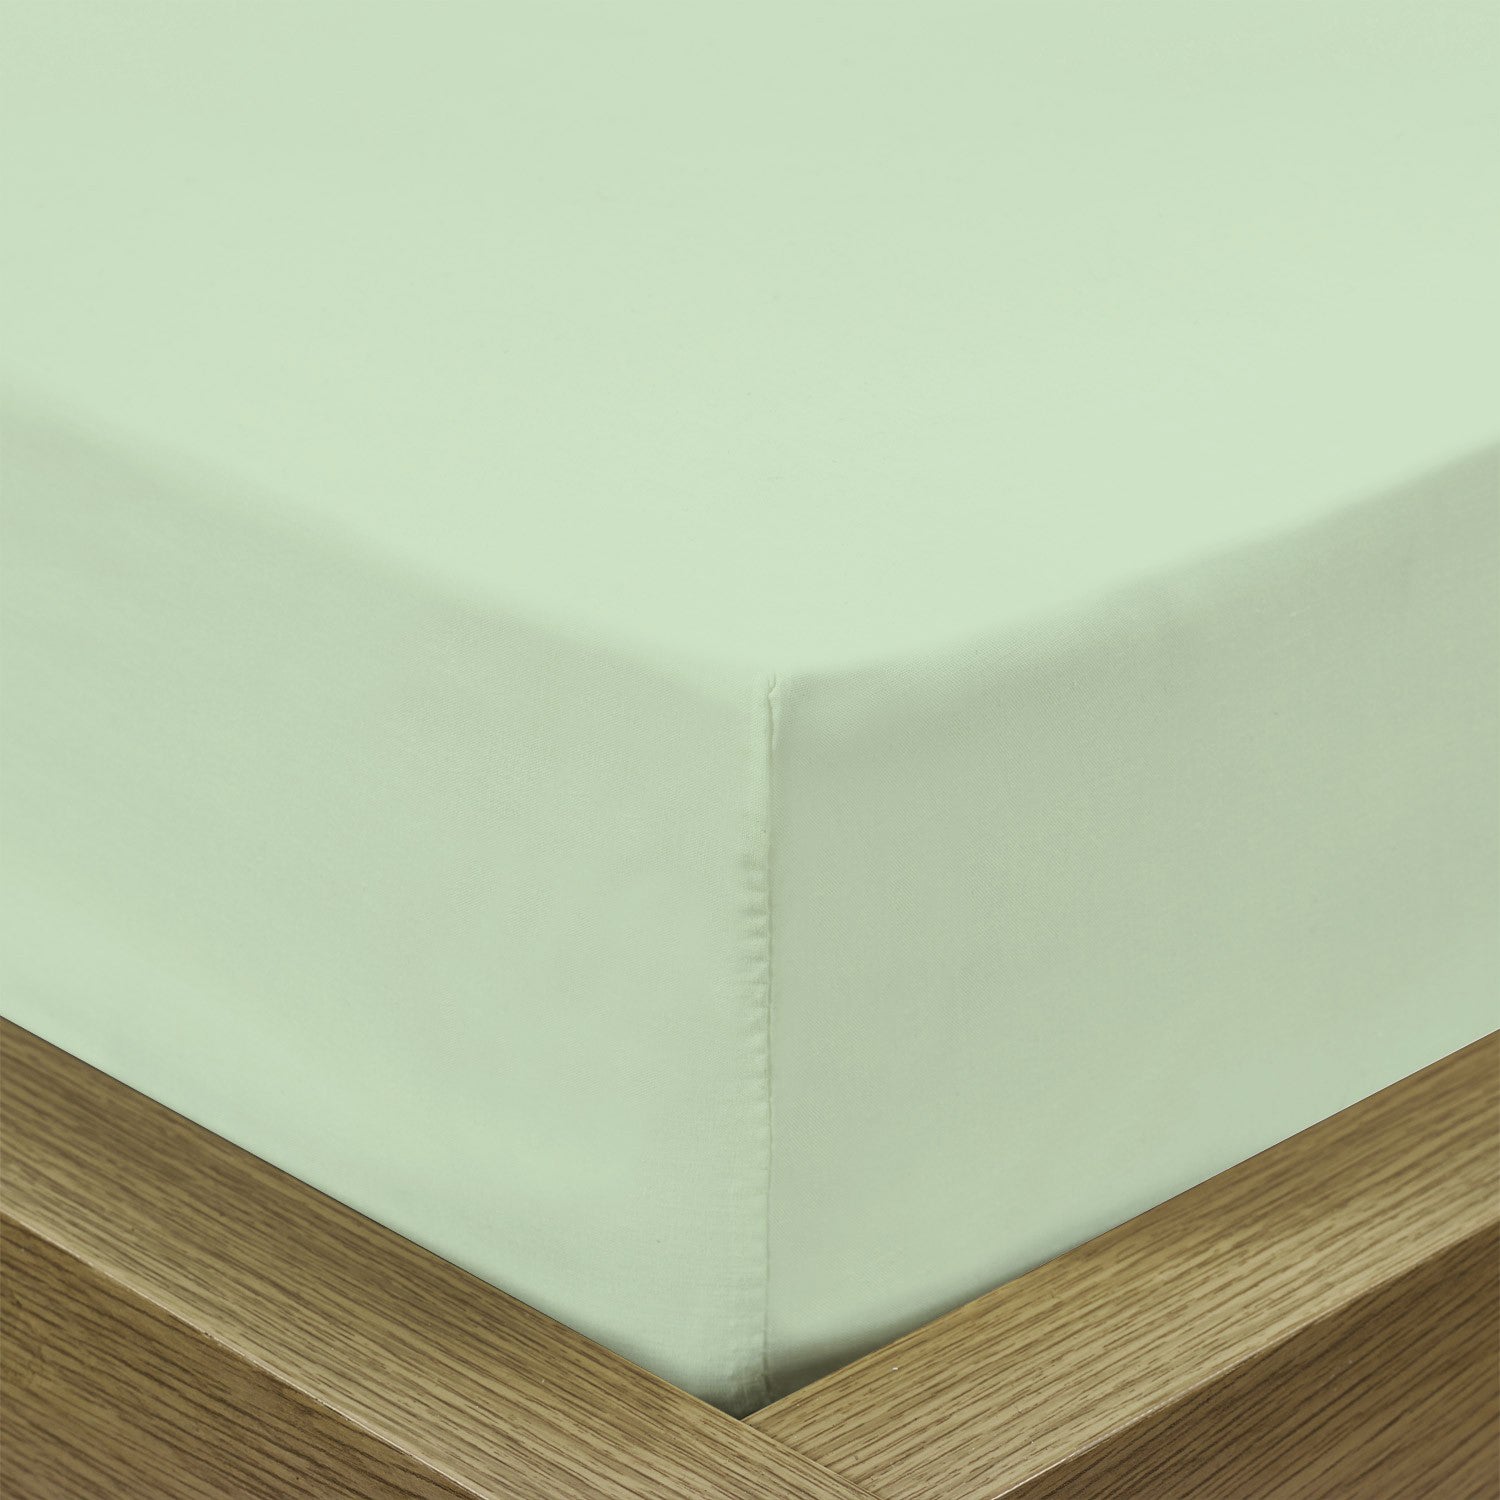 Rest Super Soft King Flat Sheet 240x260cm-Mint Green - Cotton Home